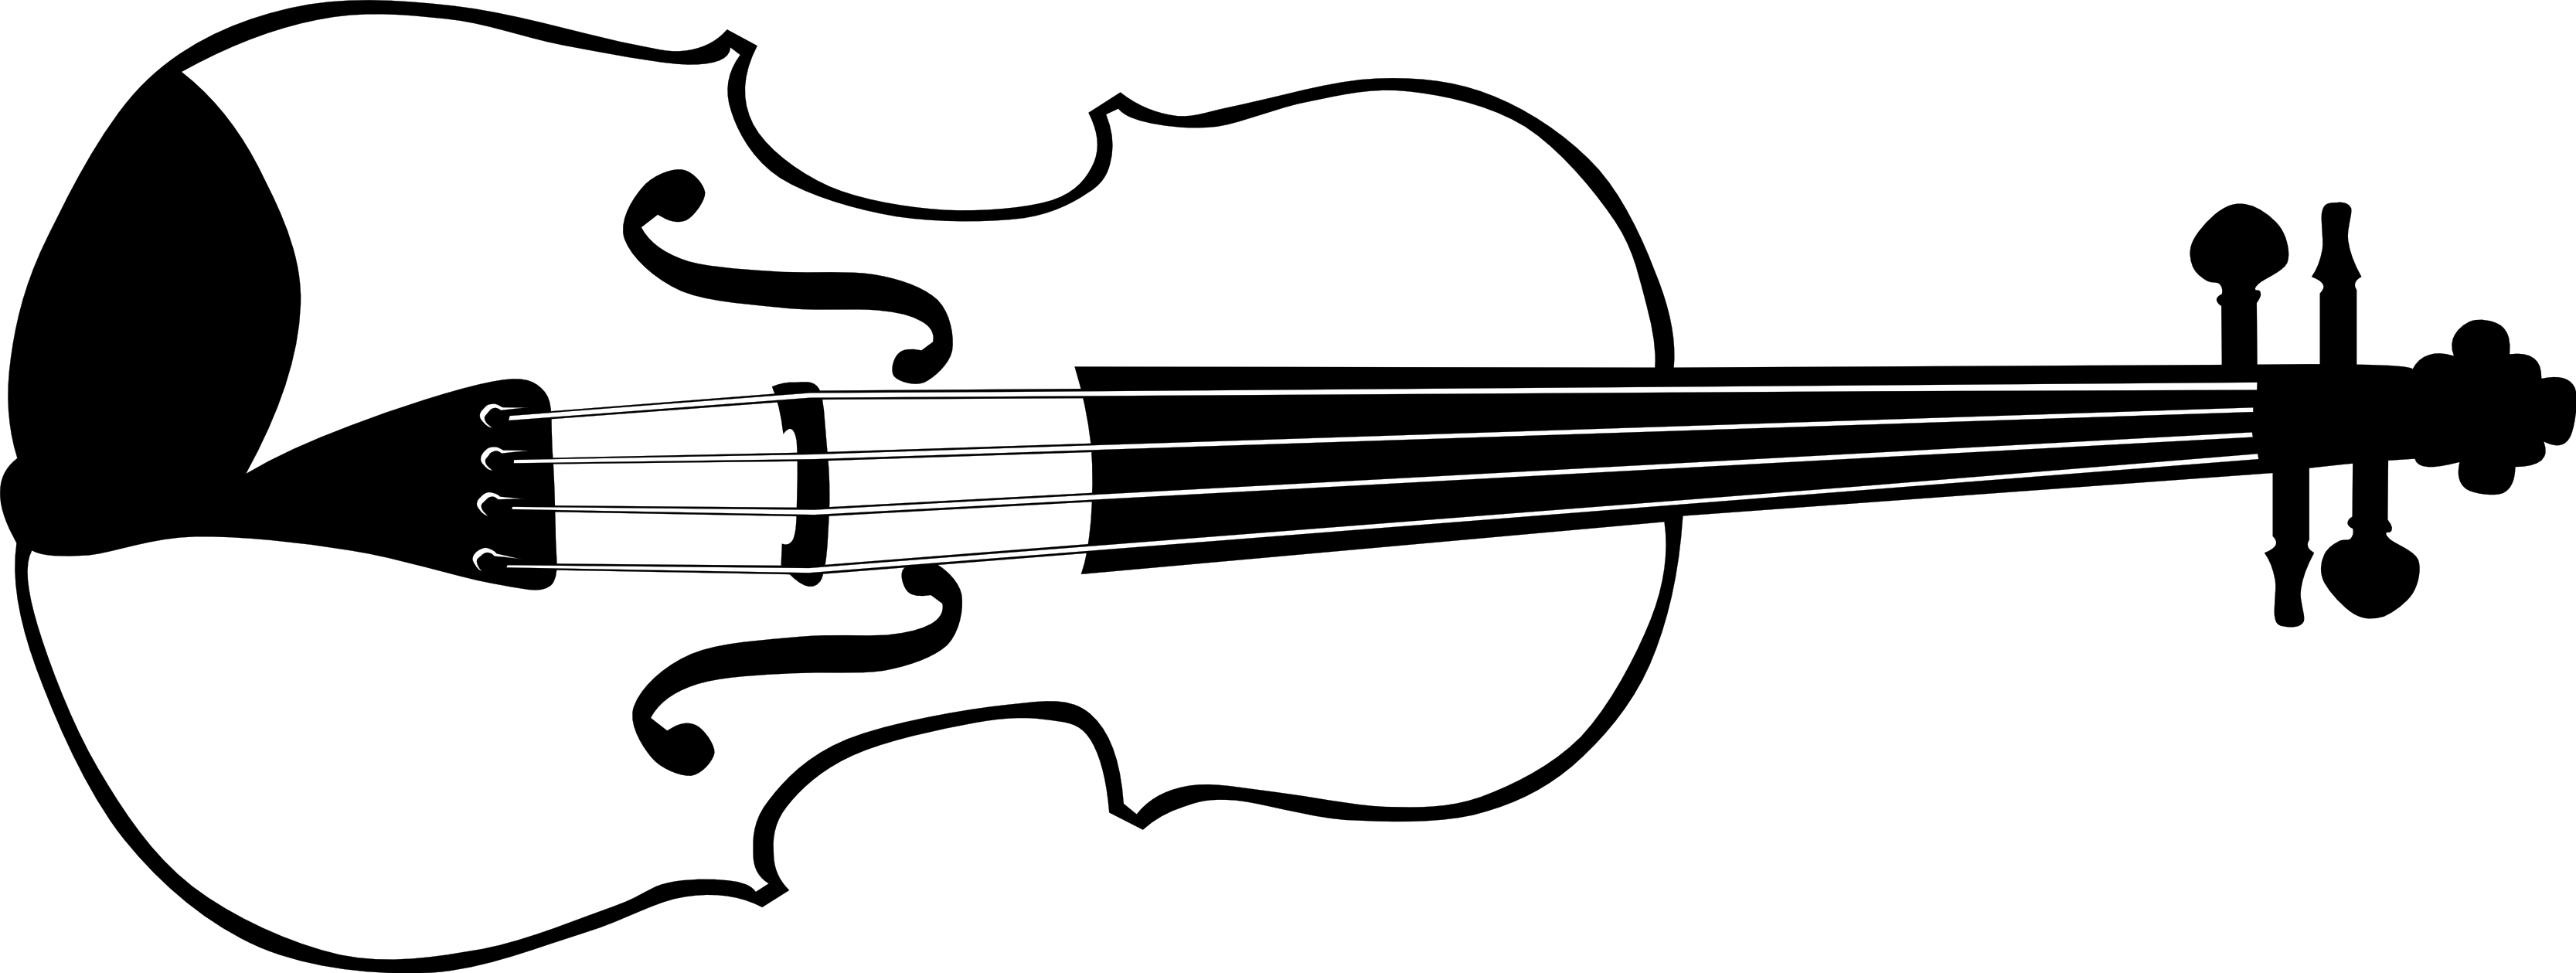 Cello clipart black and white